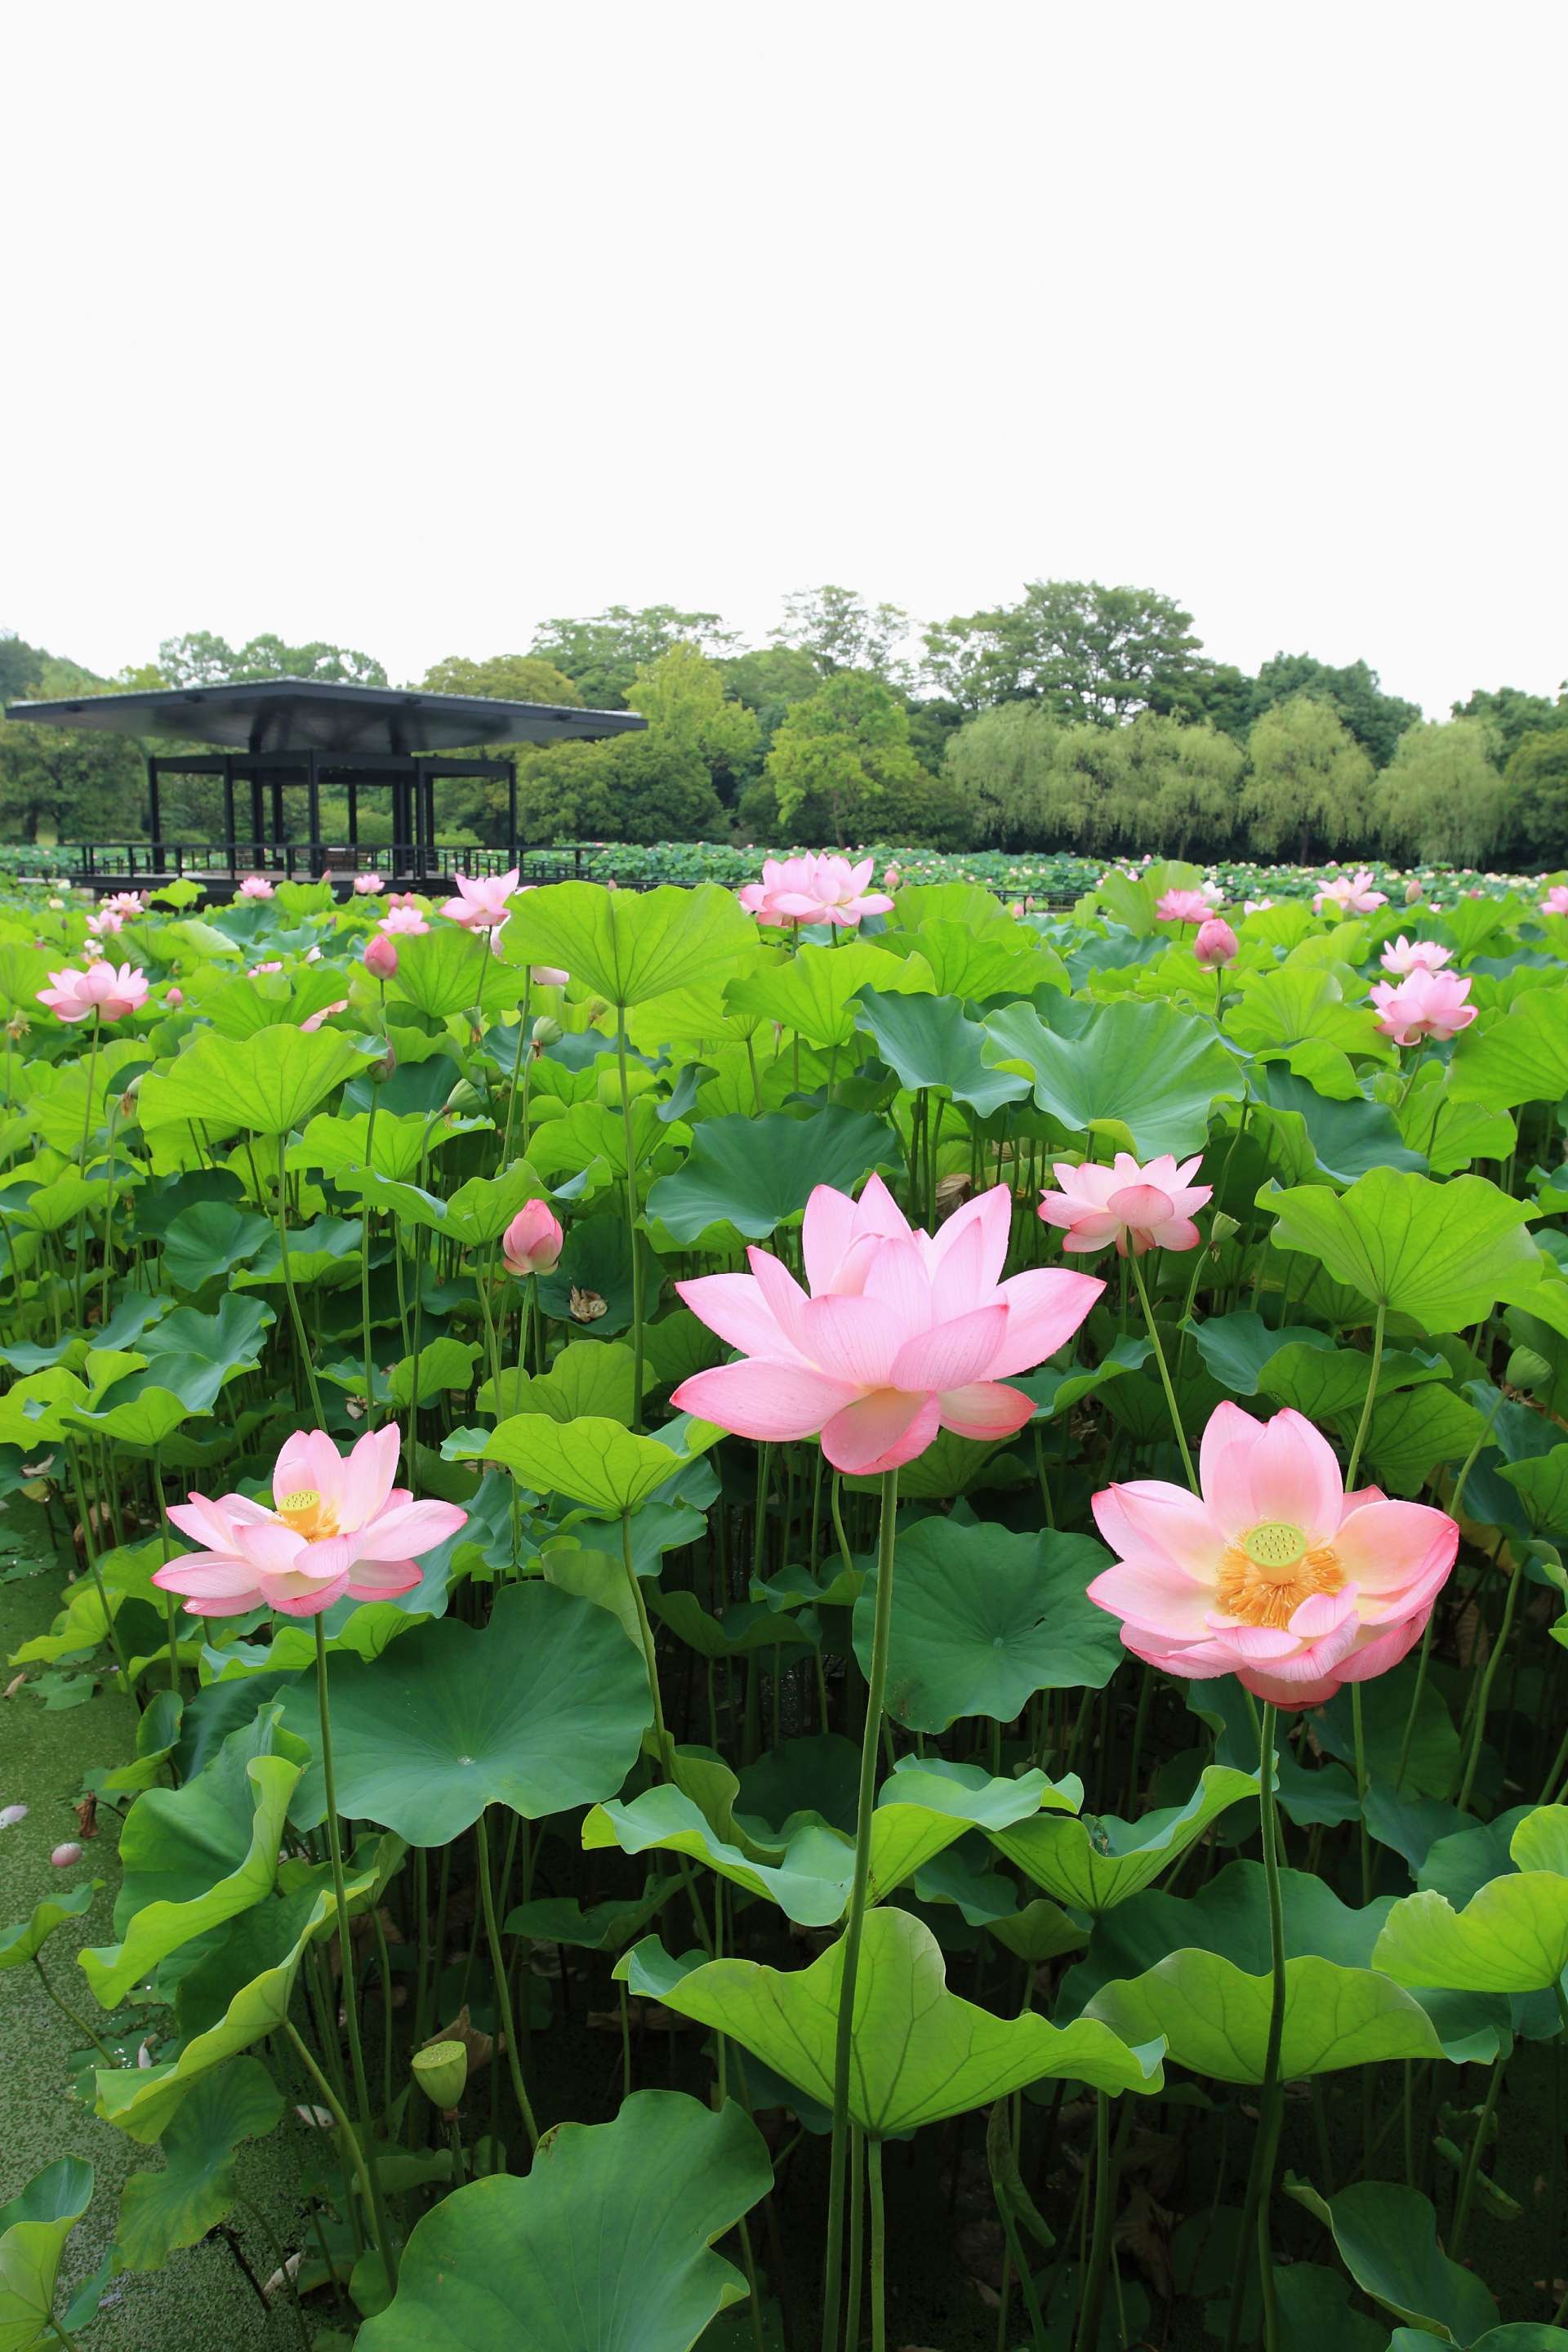 保存版 不管哪个季节前往日本都能欣赏到美丽花朵的景点大阪 万博记念公园 好运日本行